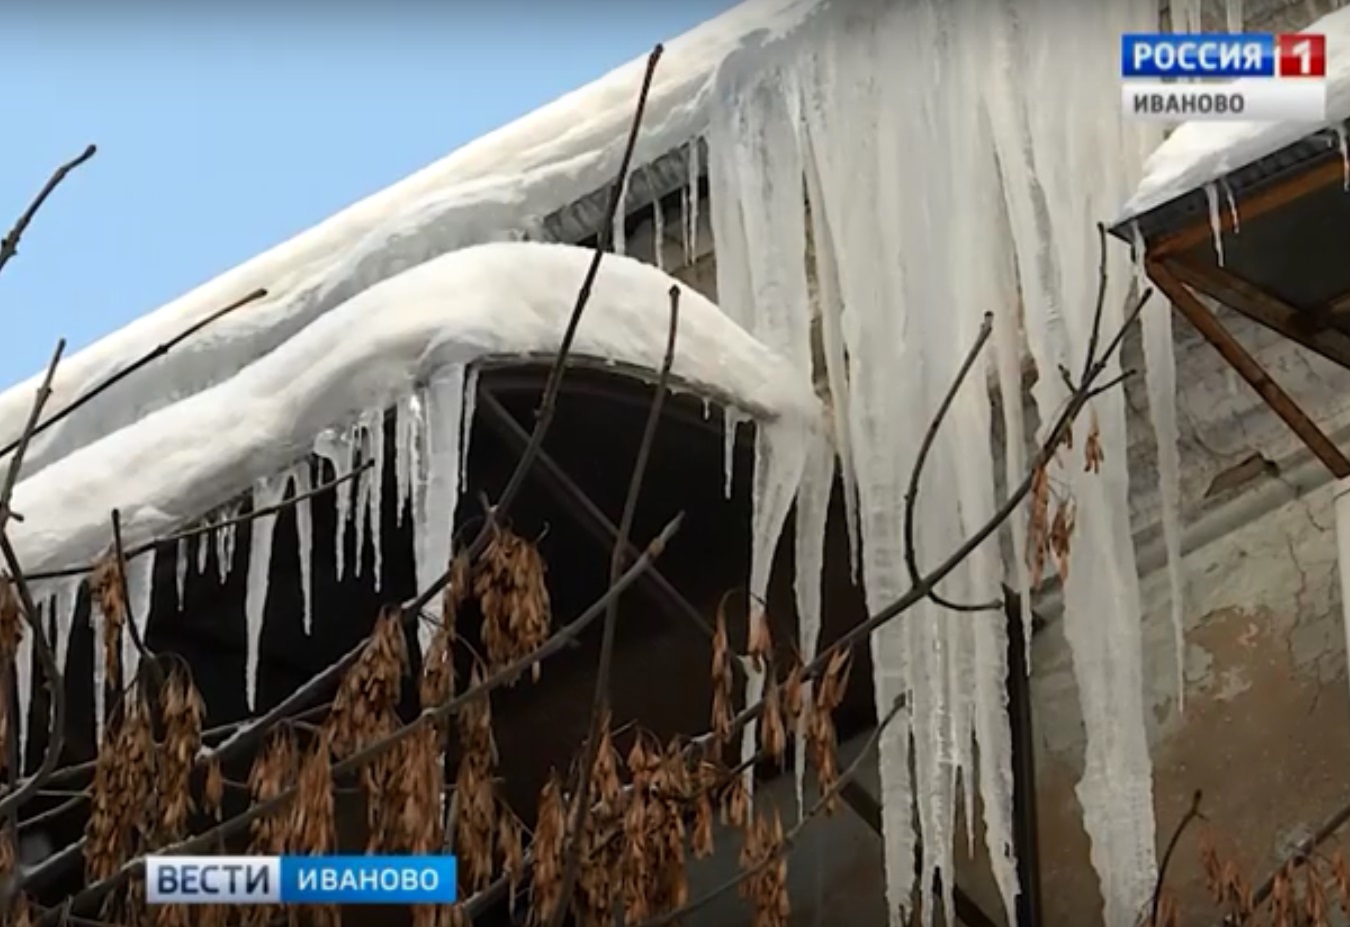 "Горячие линии" помогут растопить ледяную угрозу ивановских крыш (ТЕЛЕФОНЫ ПО РАЙОНАМ)